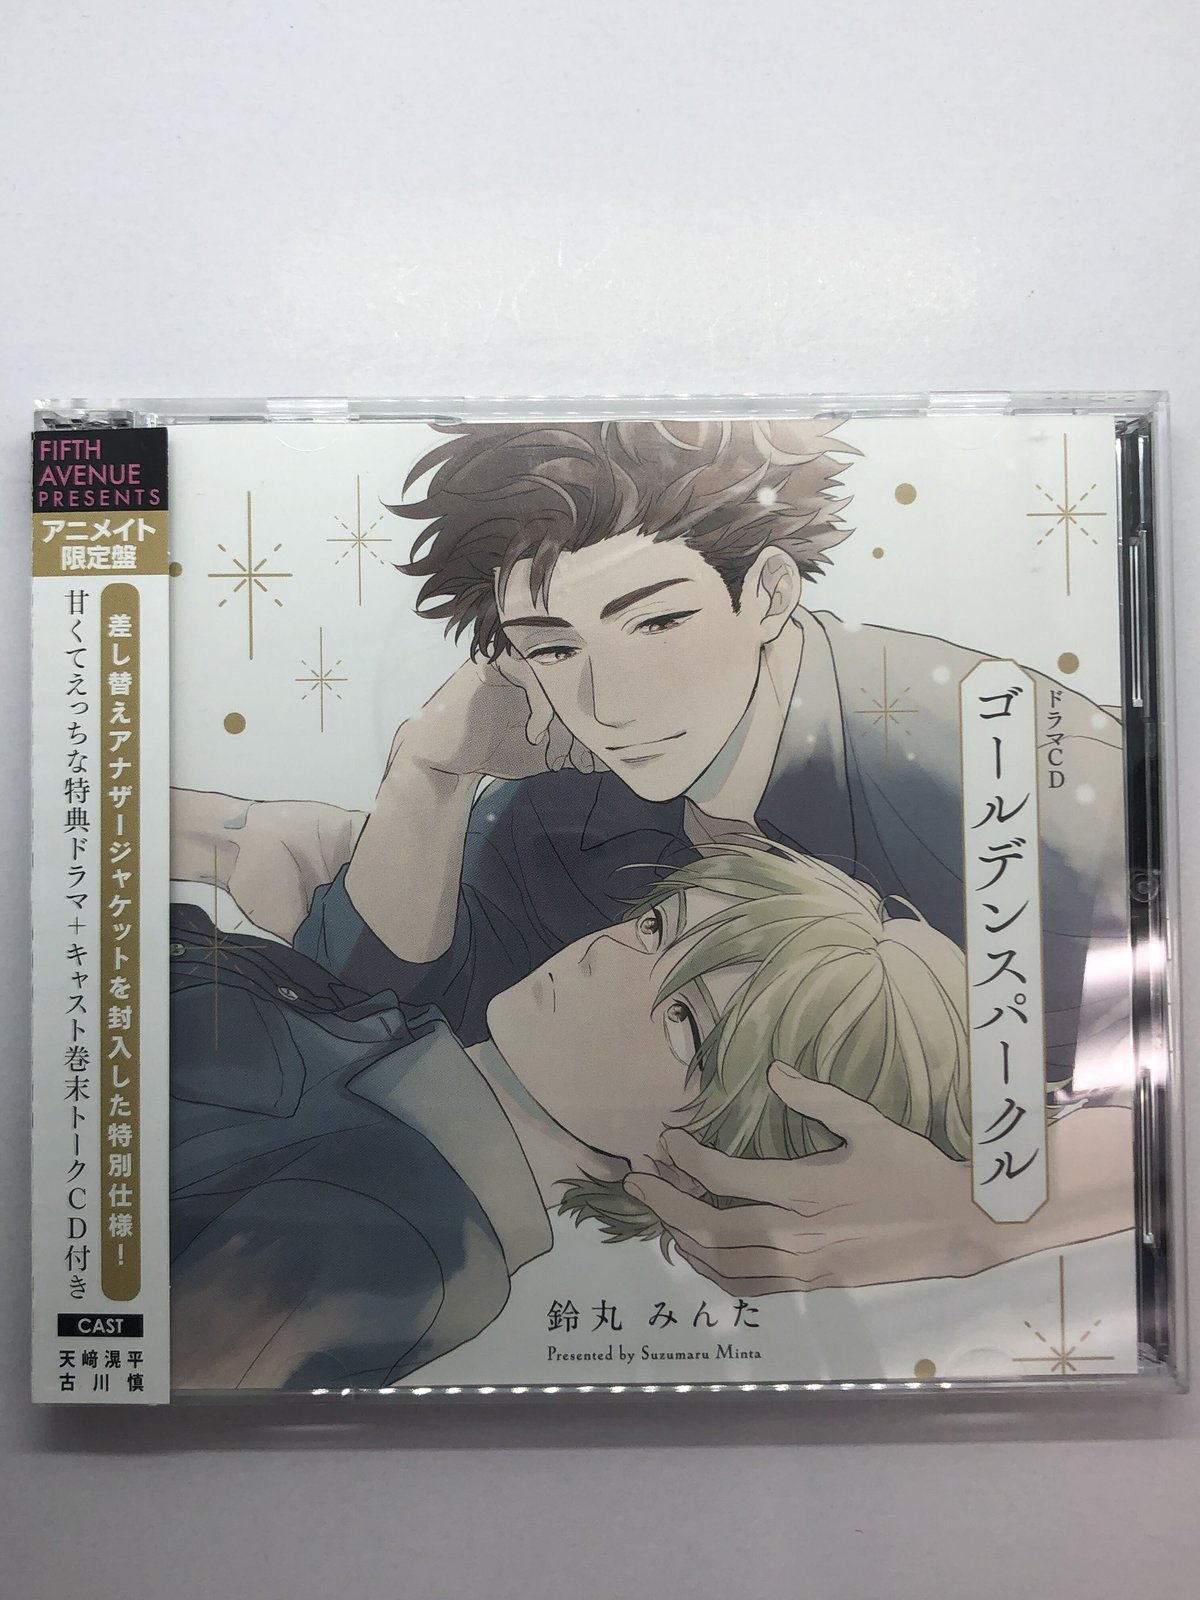 ゴールデンスパークル 特典ドラマCD付 アニメイト限定盤 CD